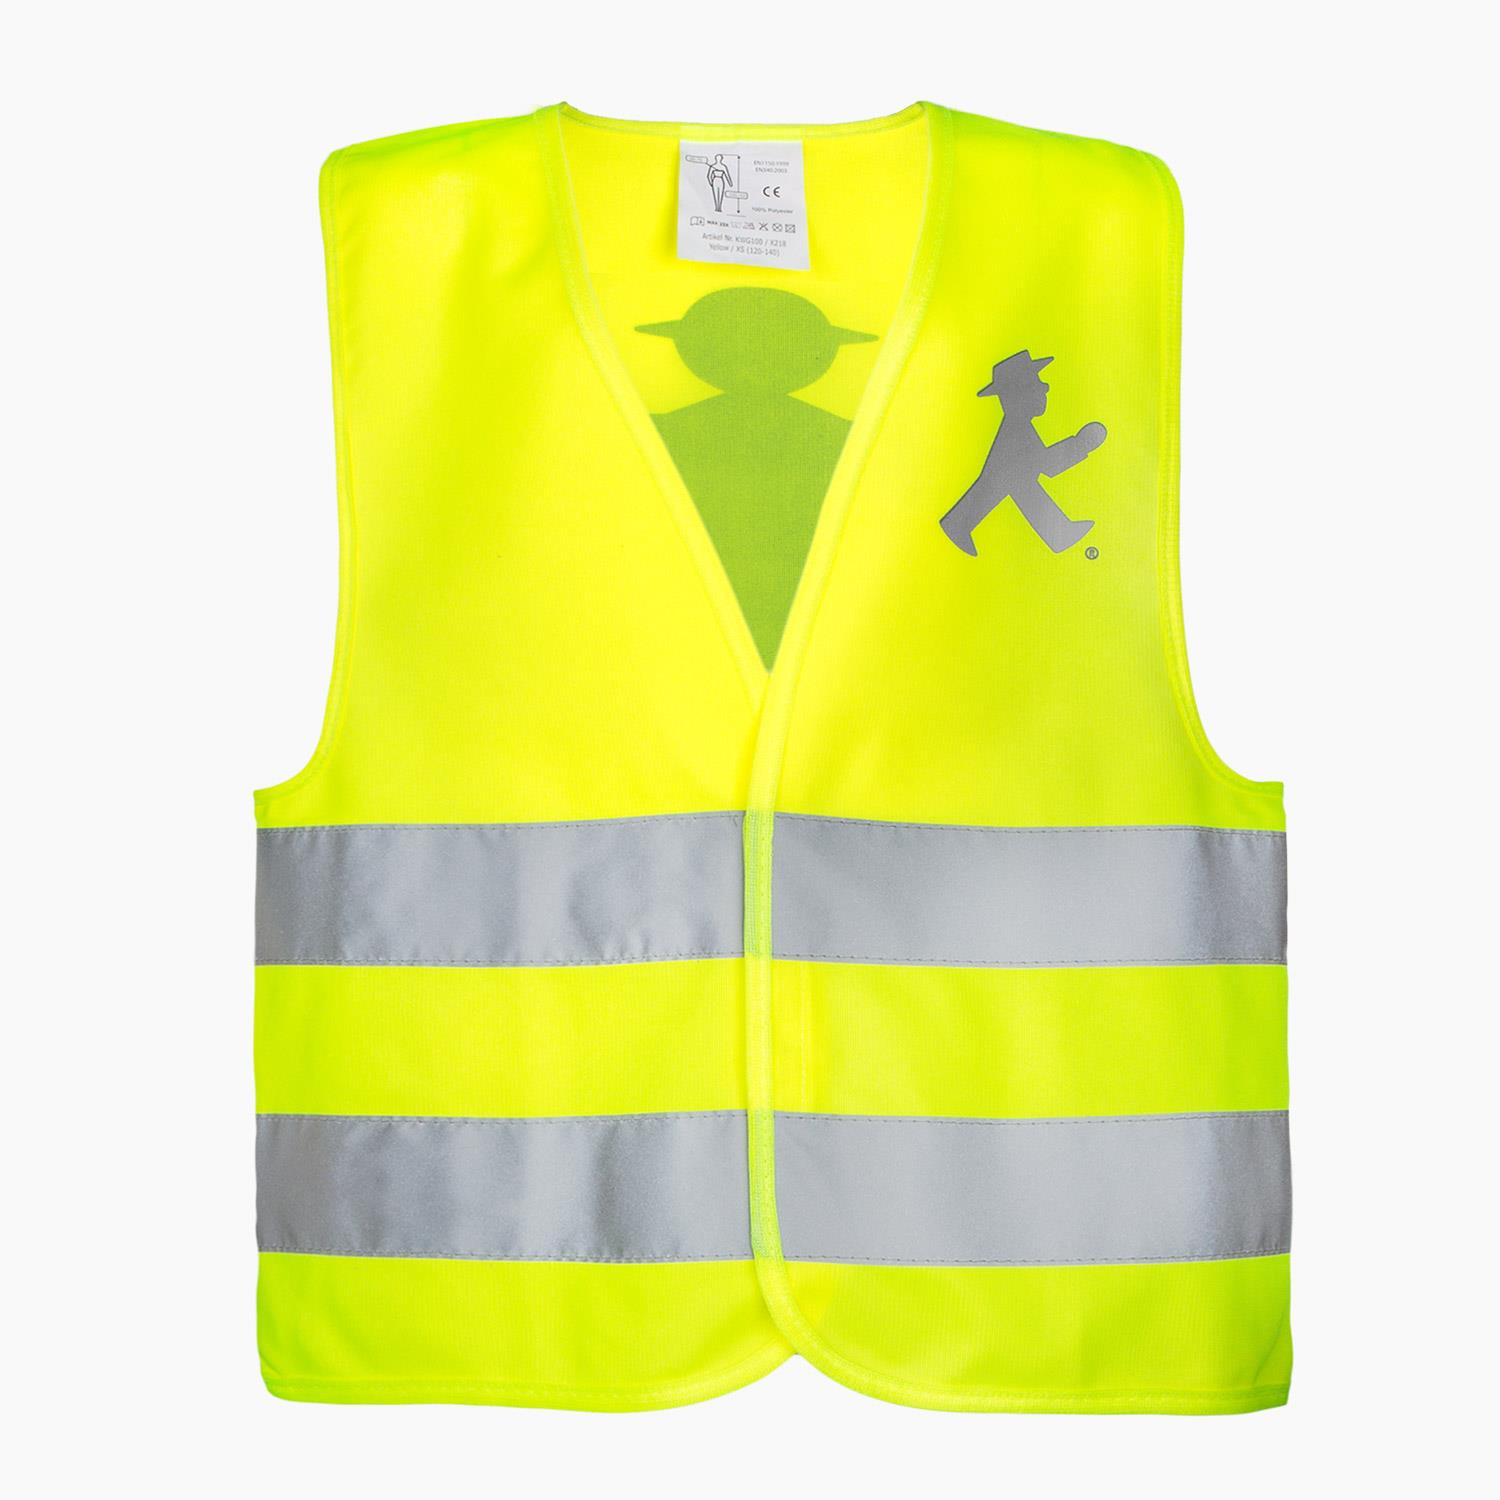 LOTSE S/ Safety Vest